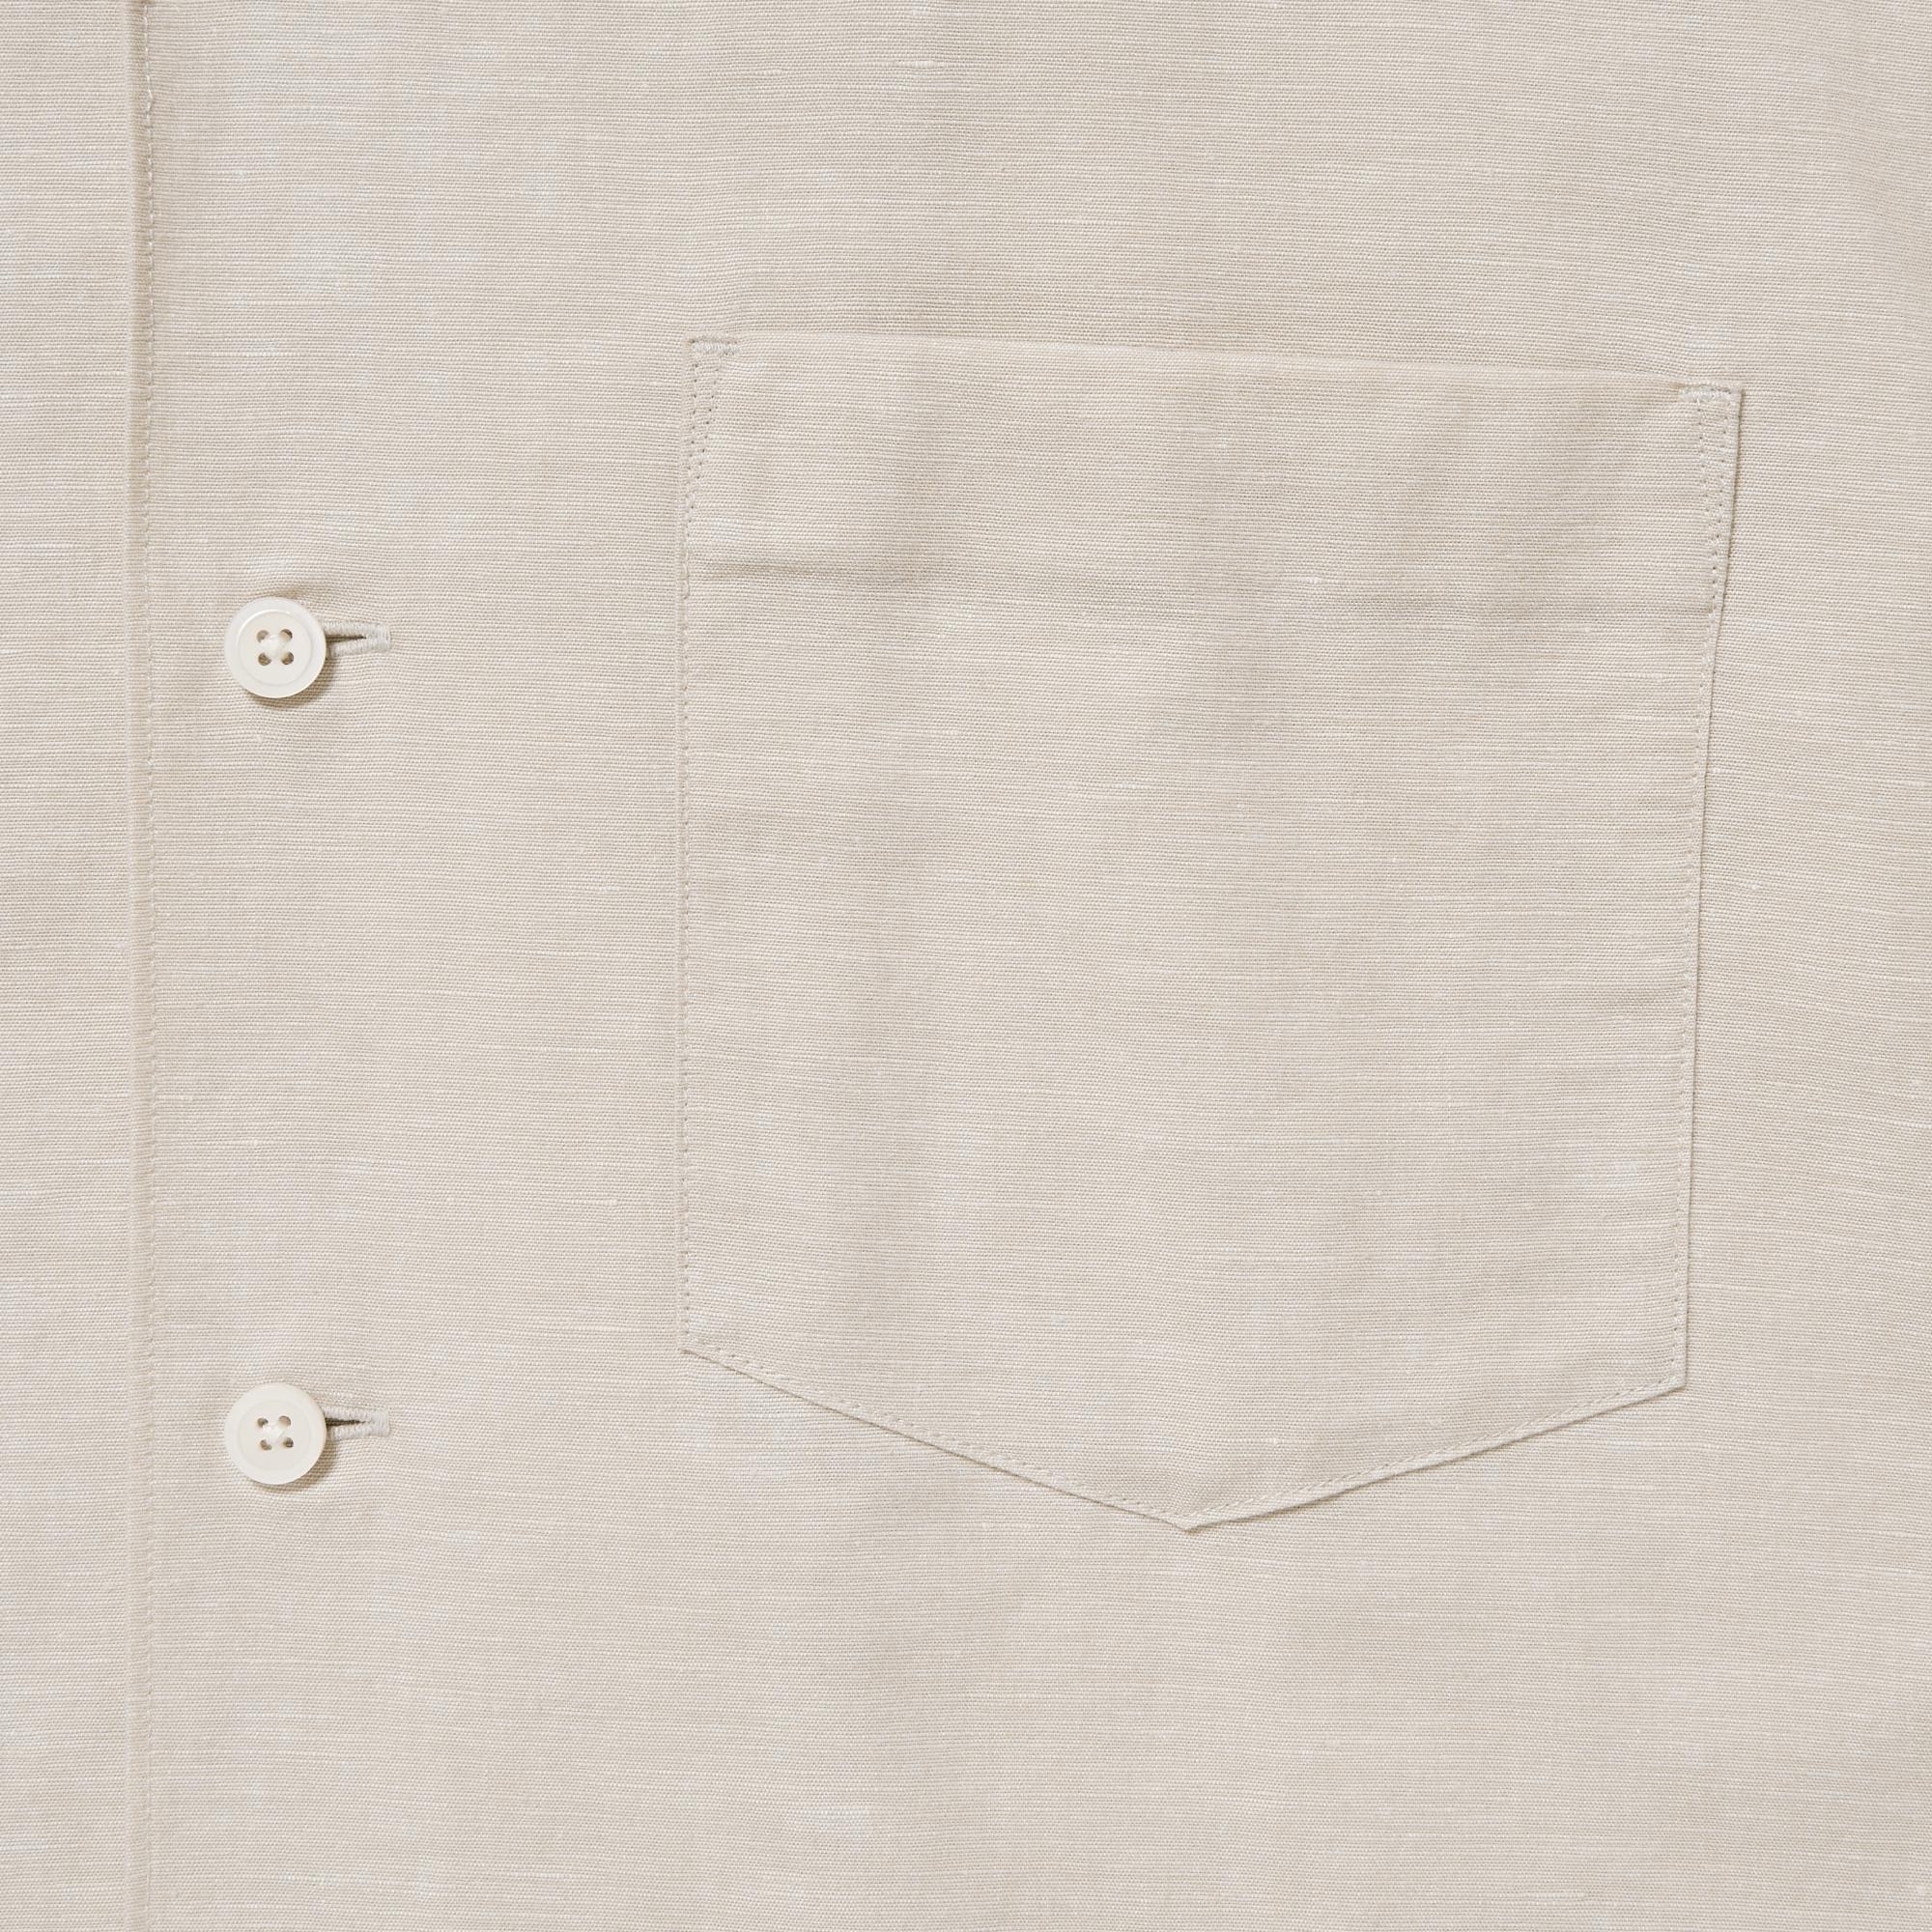 Cotton Linen Open Collar Short Sleeve Shirt